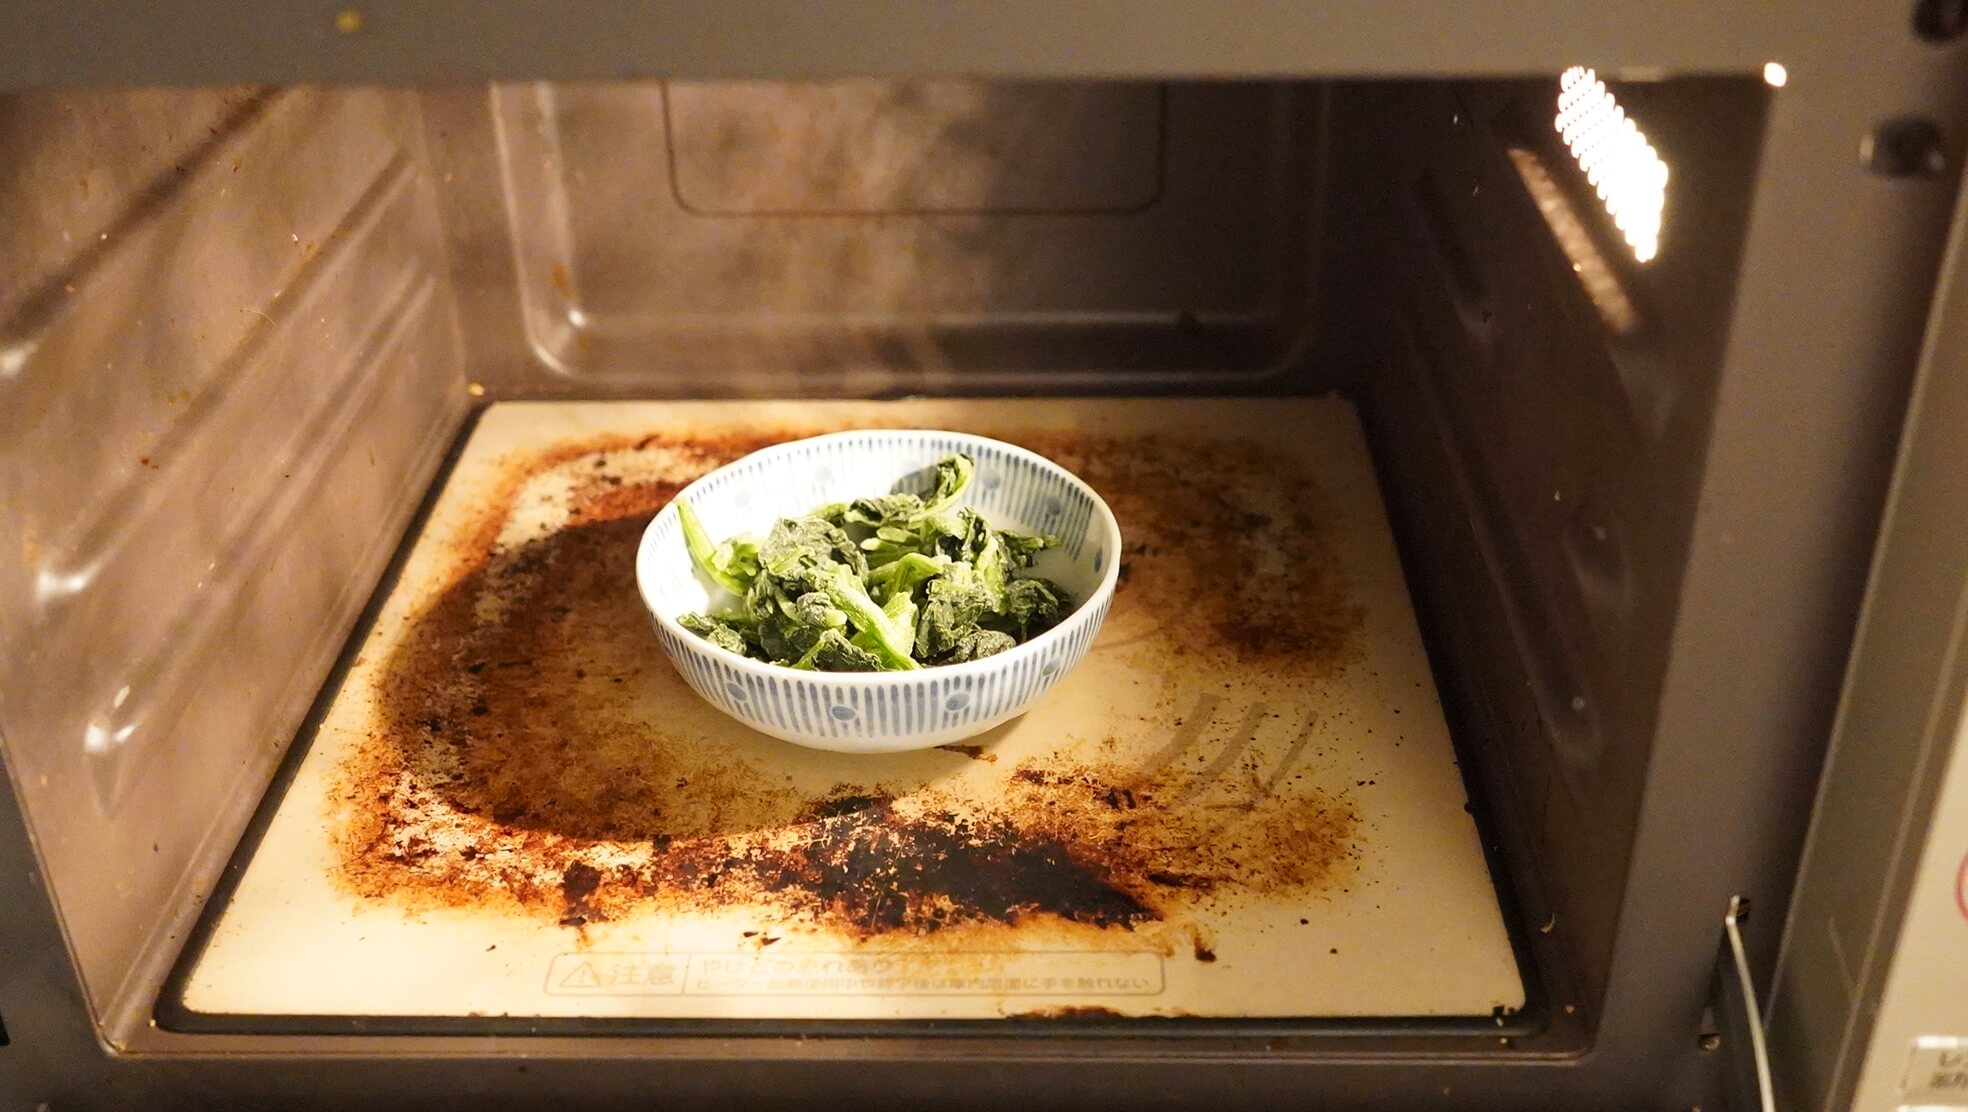 コストコの冷凍食品ニチレイ「九州産のほうれん草です。」を電子レンジで加熱している写真